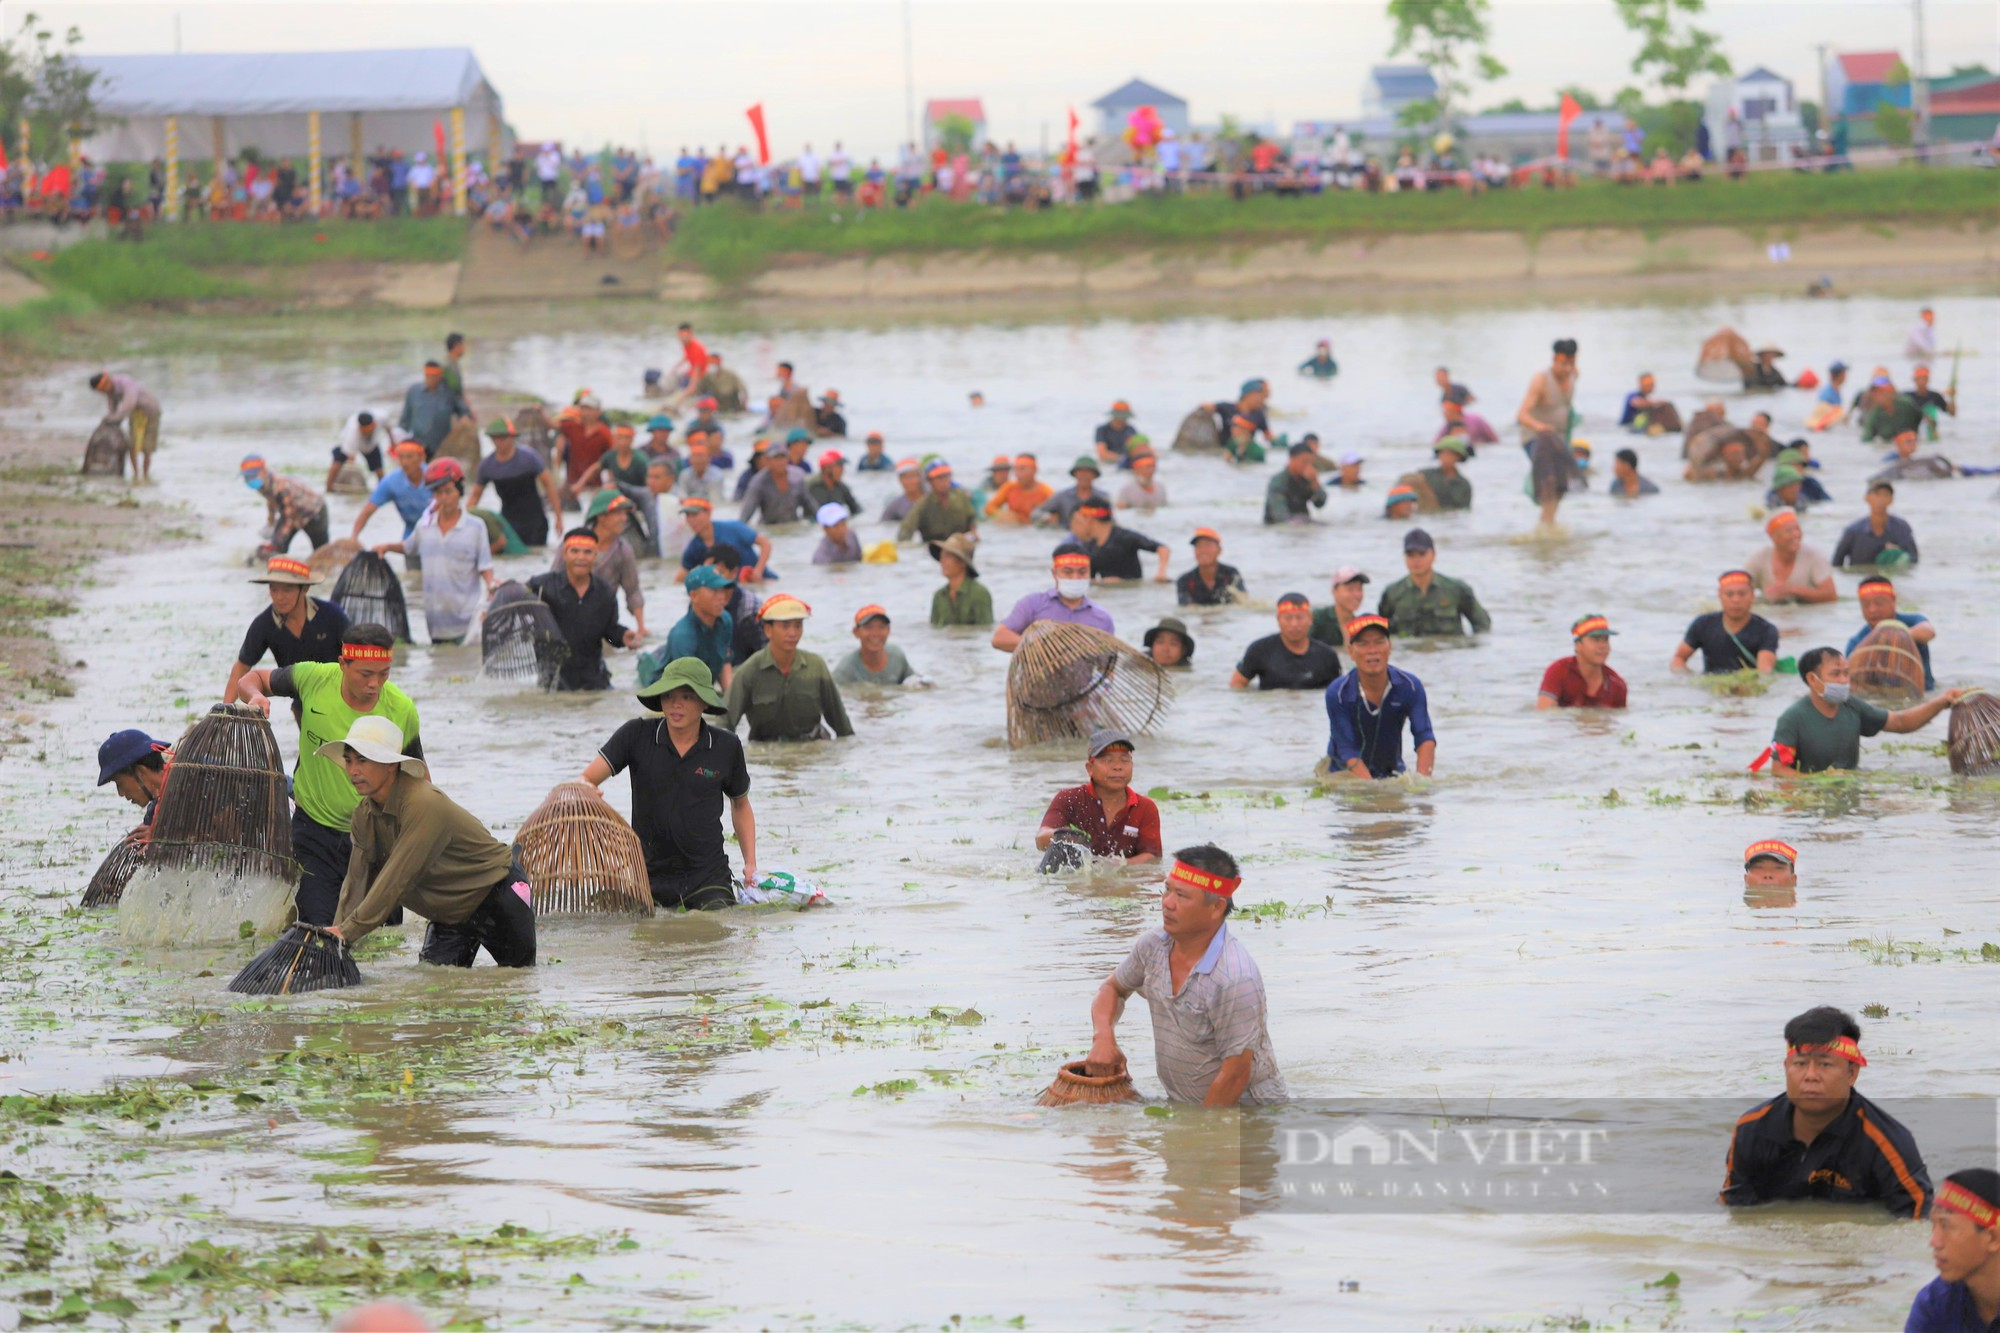 Hà Tĩnh: Hàng nghìn người dân reo hò, lội bùn tham gia Lễ hội bắt cá truyền thống xã Thạch Hưng - Ảnh 5.